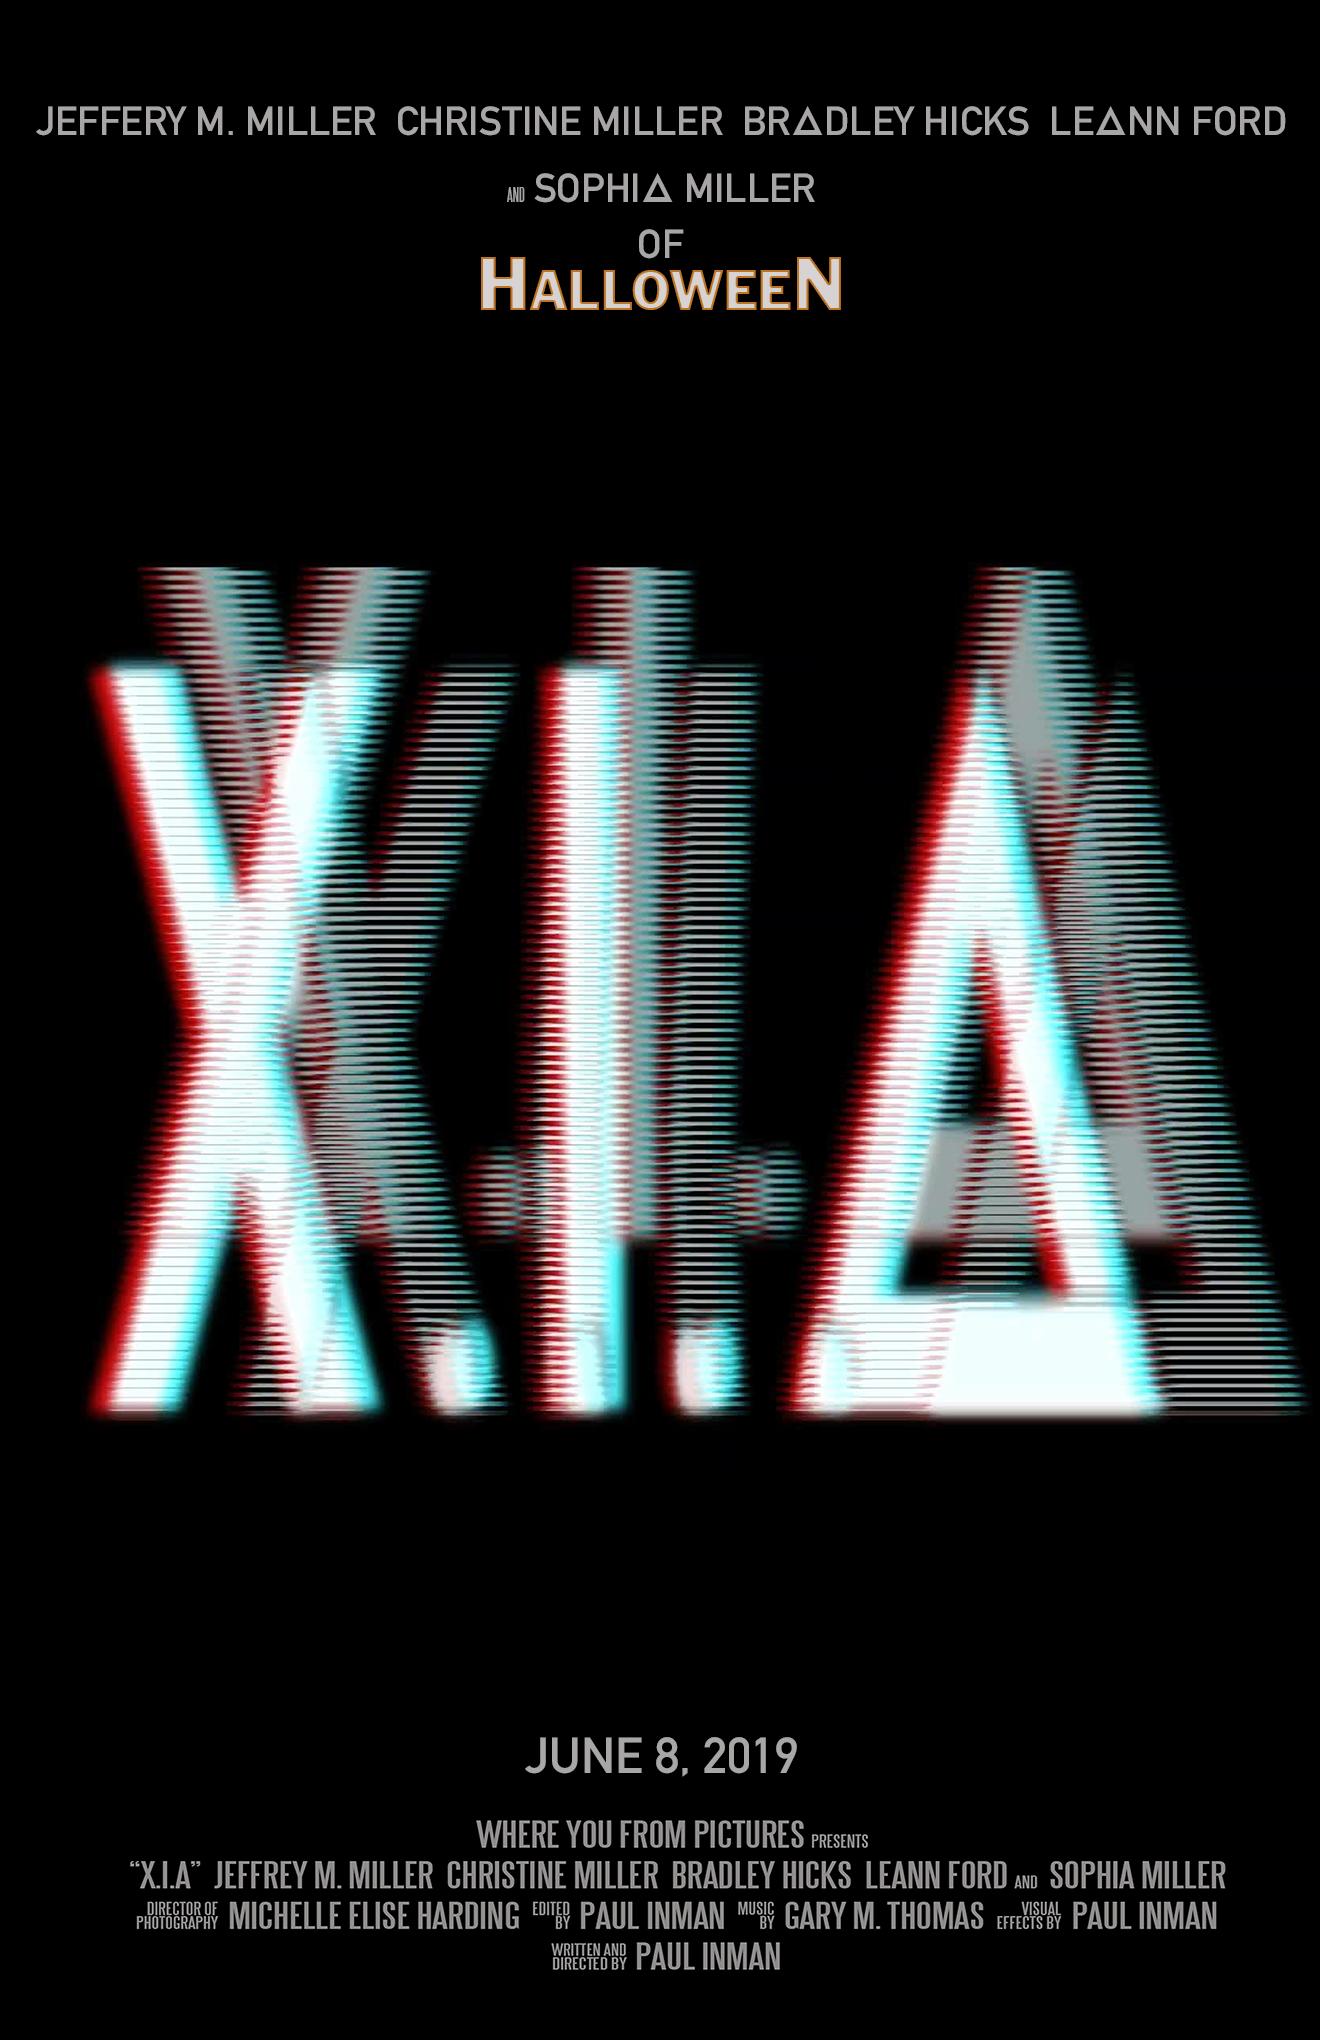 X.I.A